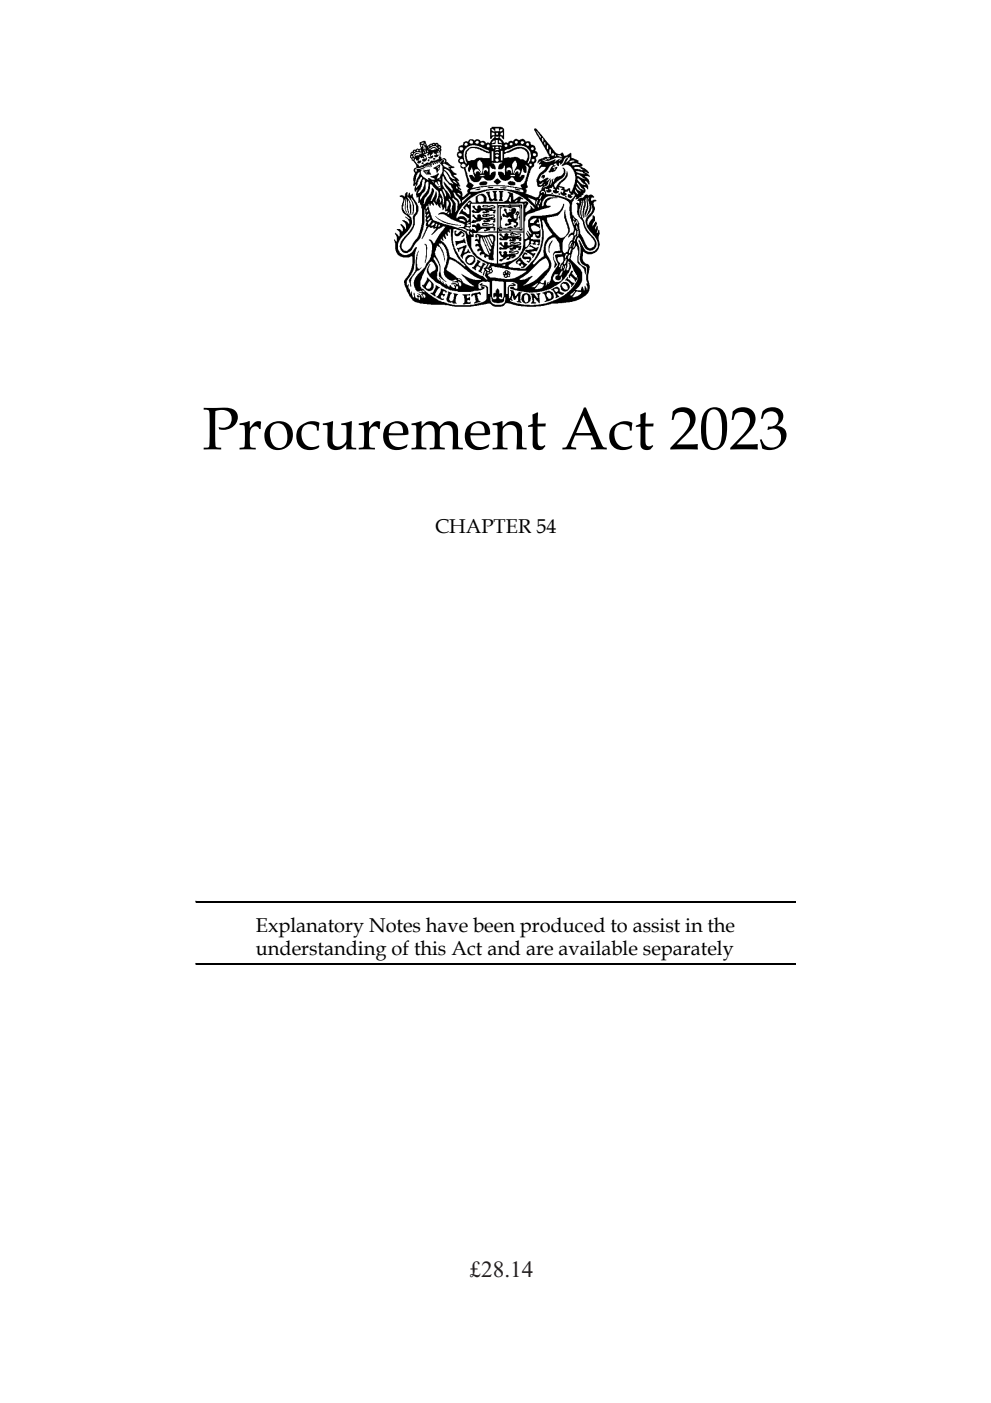 Procurement Act 2023: Chapter 54